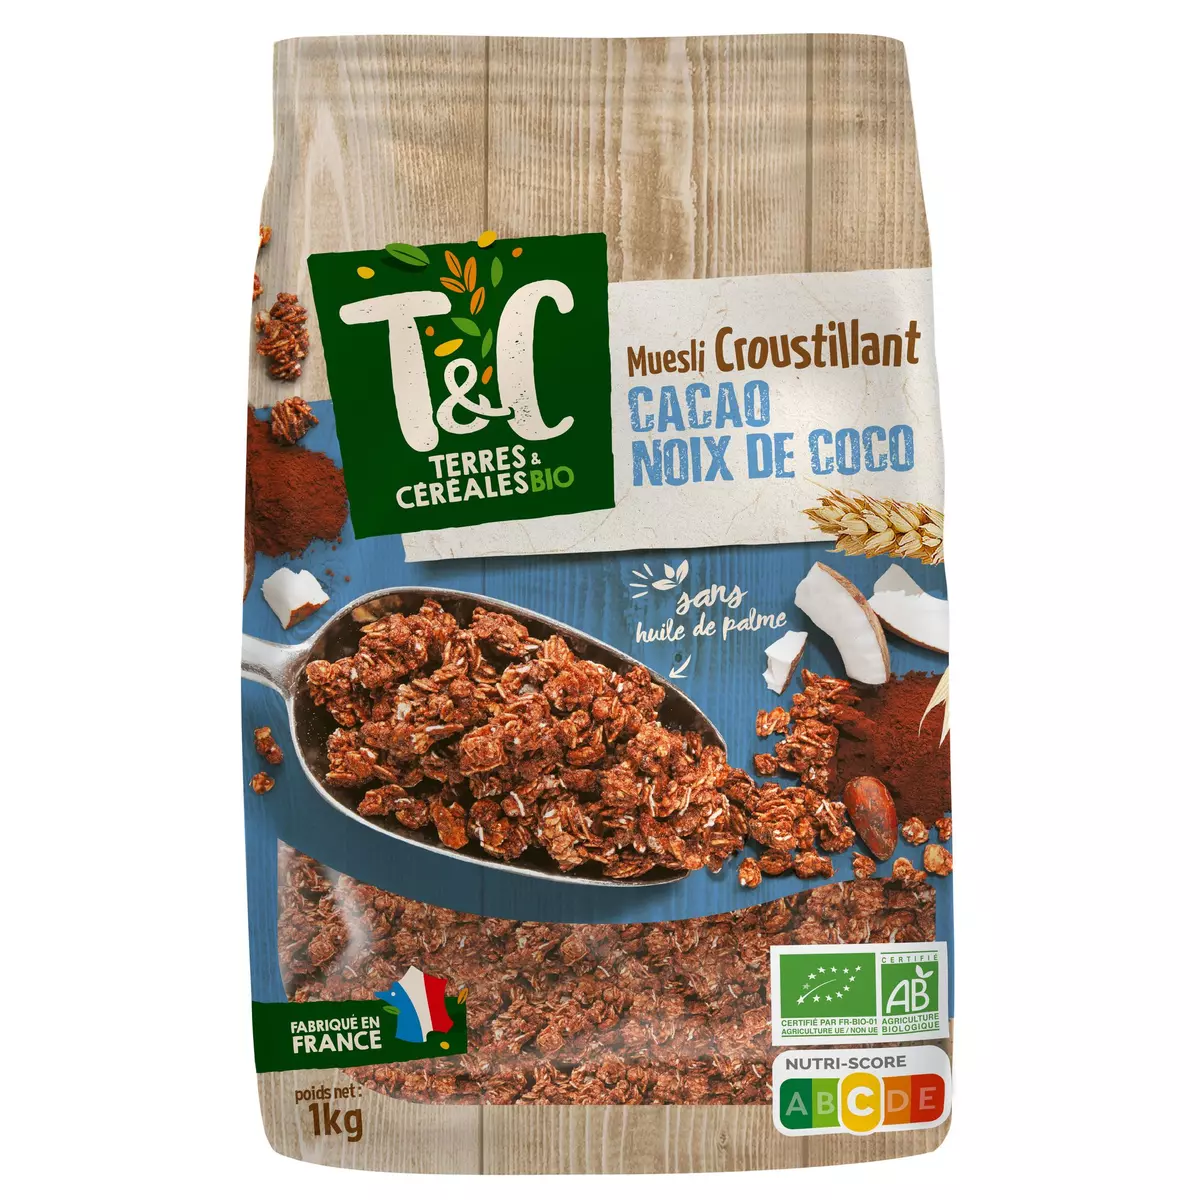 TERRES ET CEREALES BIO Muesli de céréales croustillantes cacao et noix de coco 1kg